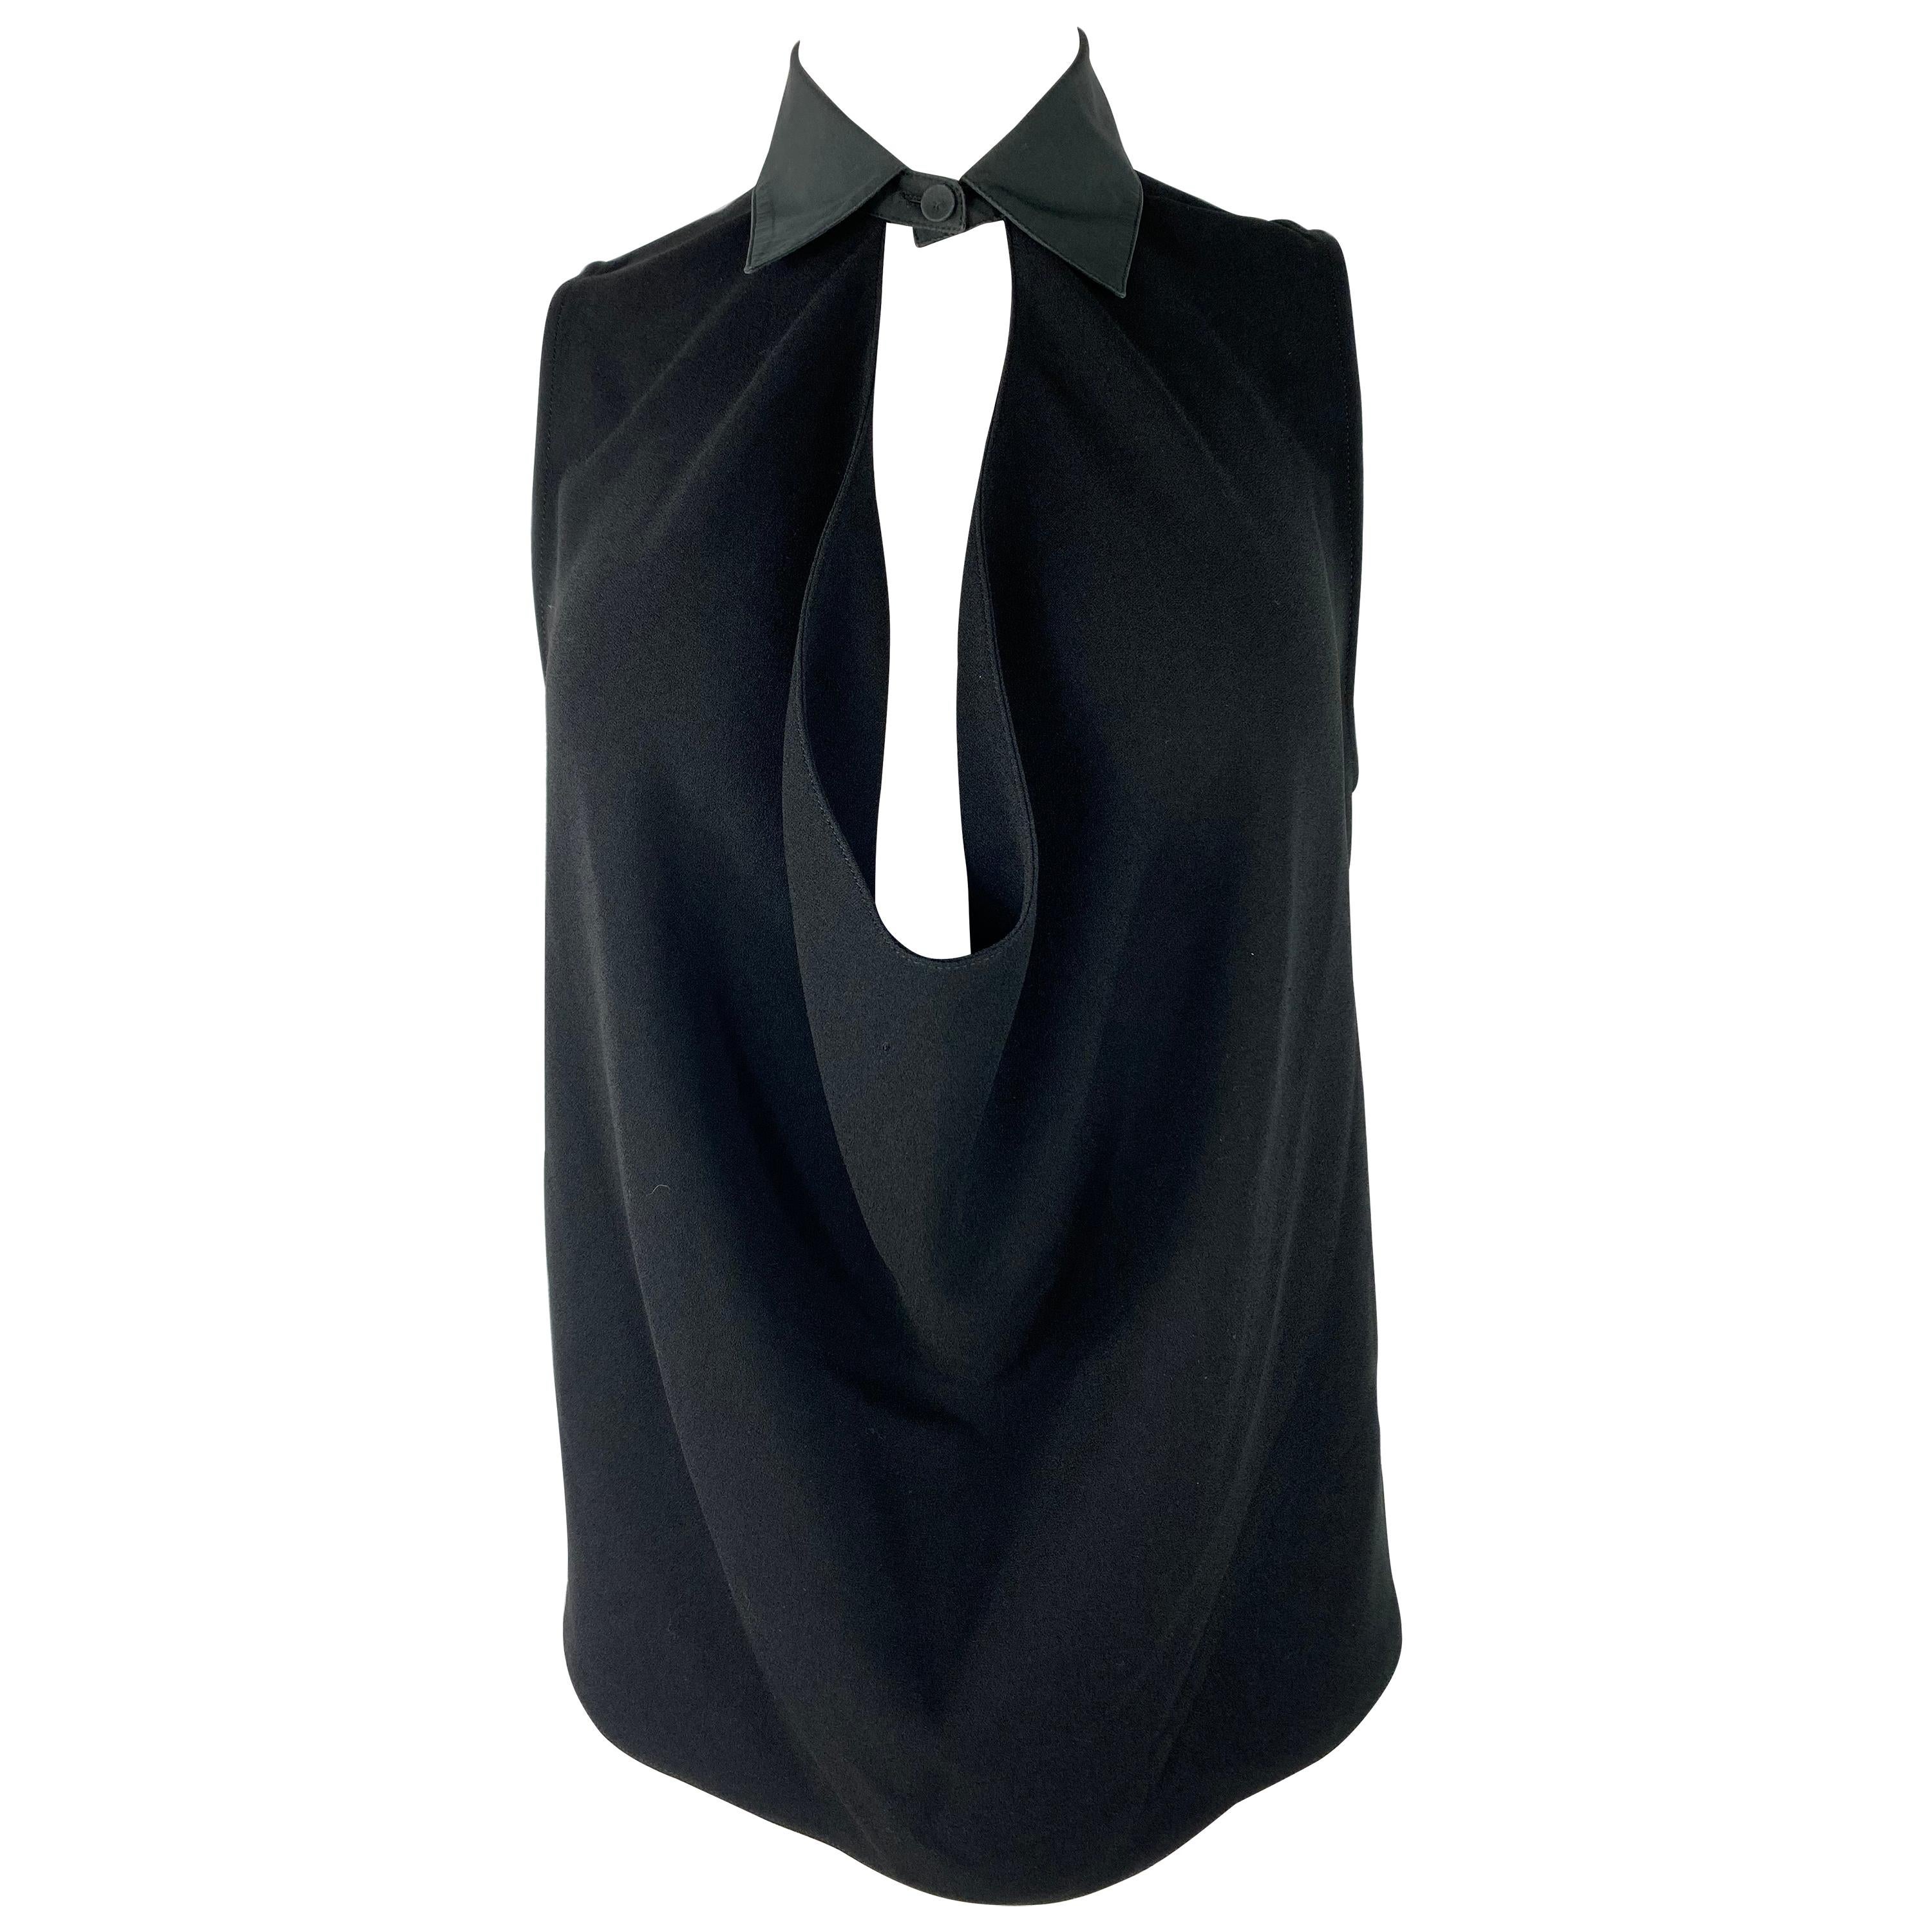 Balenciaga Paris Black Sleeveless Top Blouse, Size 38